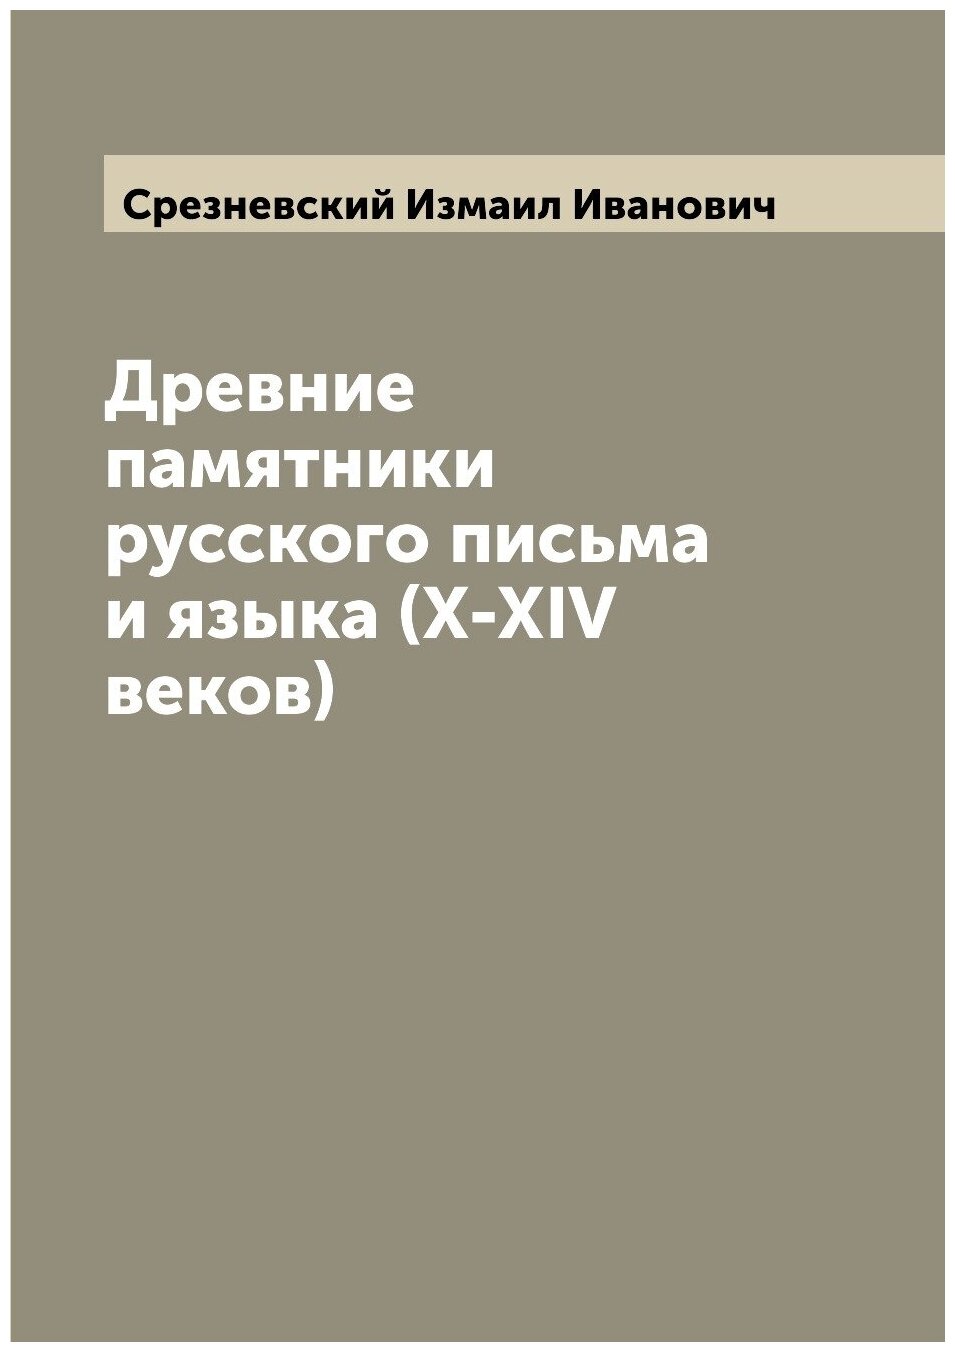 Древние памятники русского письма и языка (X-XIV веков)